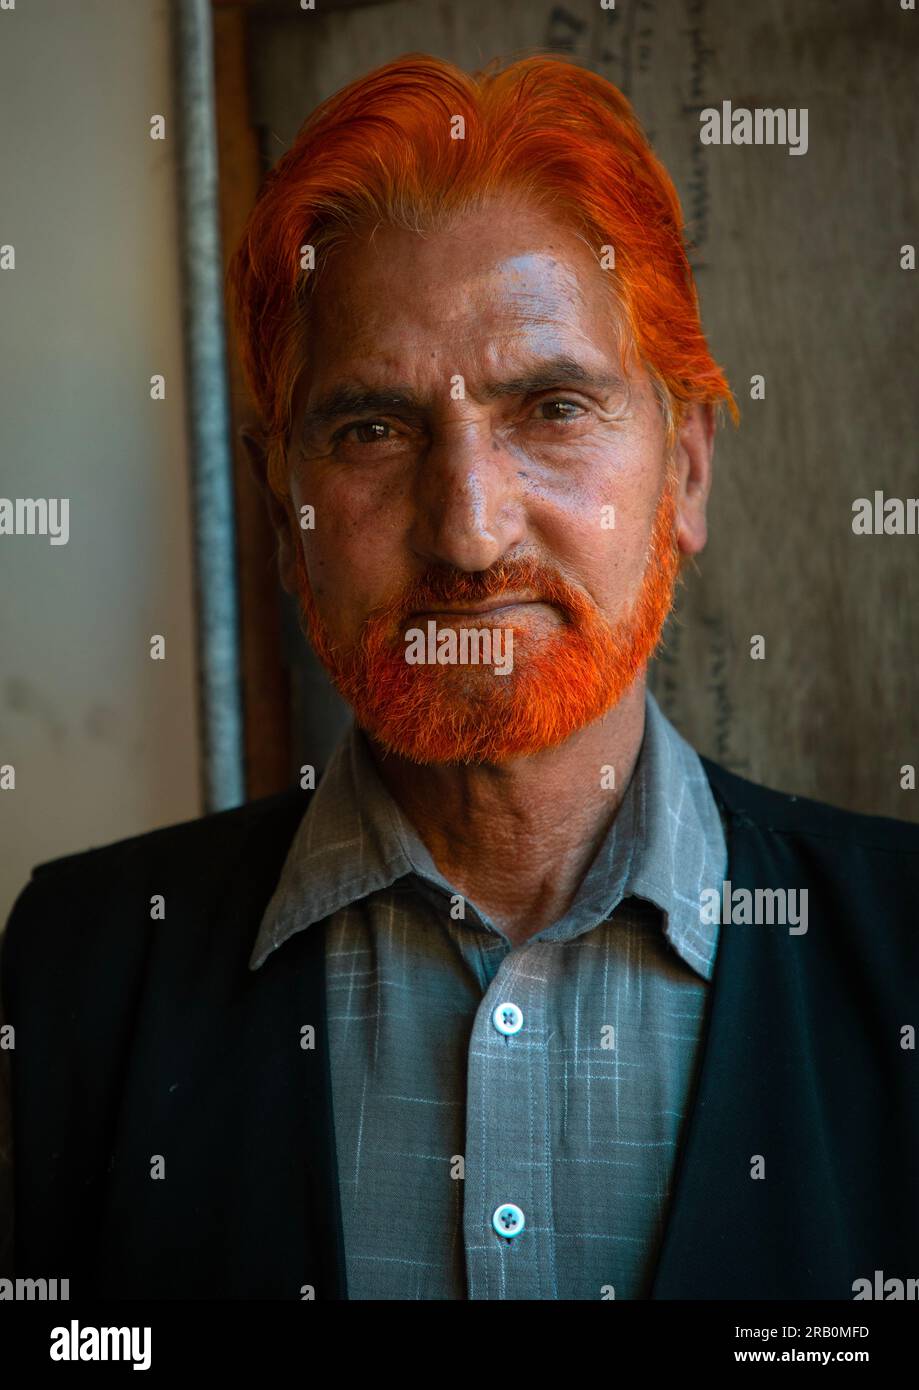 Uomo del Kashmir con capelli rossi e barba tinta con henné, Jammu e Kashmir, Srinagar, India Foto Stock